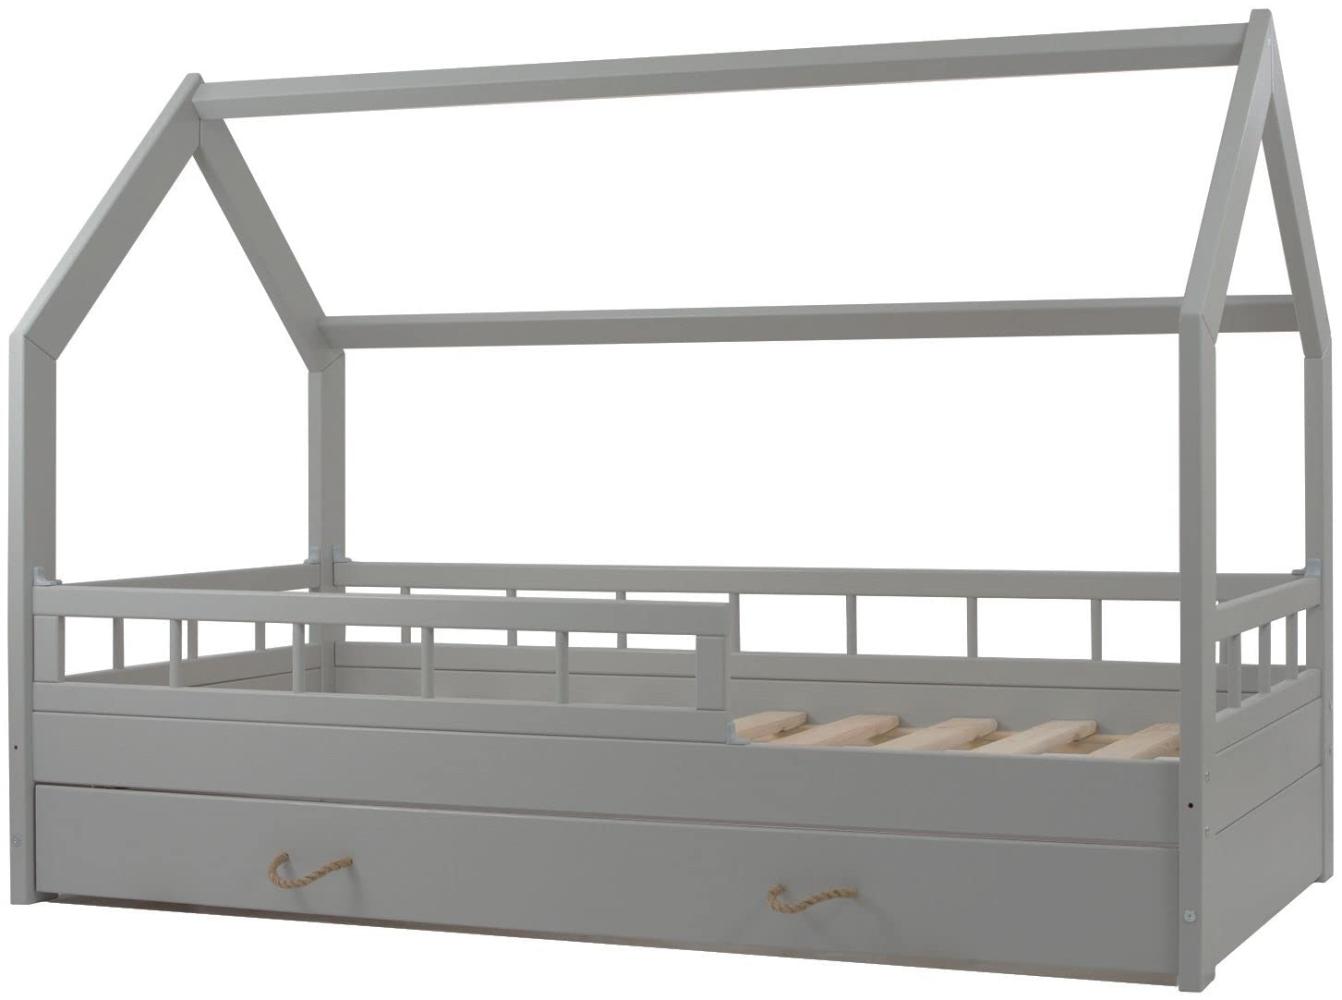 Hausbett Kinderbett mit Schublade Rausfallschutz Skandinavisches Design 160x80cm (Farbe: grau) Bild 1